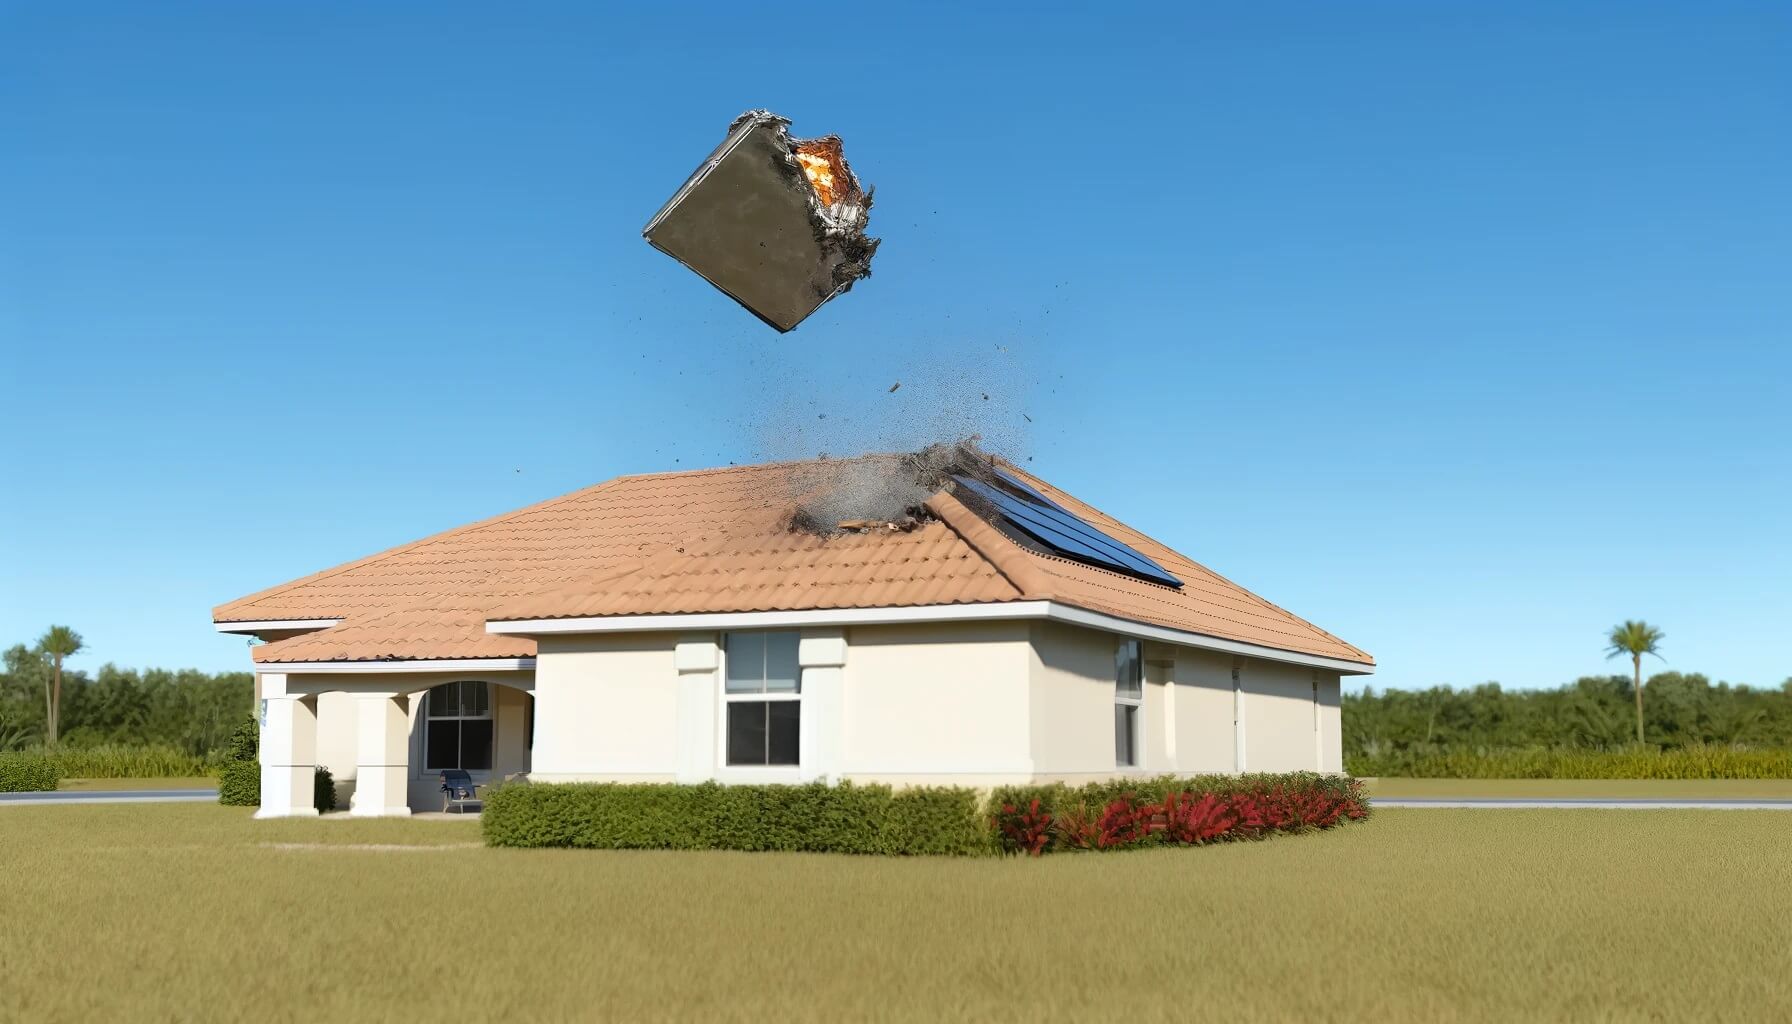 На дом жителя США упал космический мусор — ведется расследование. Космический мусор упал на дом жителя Флориды. Изображение создано нейросетью DALLE-3. Фото.